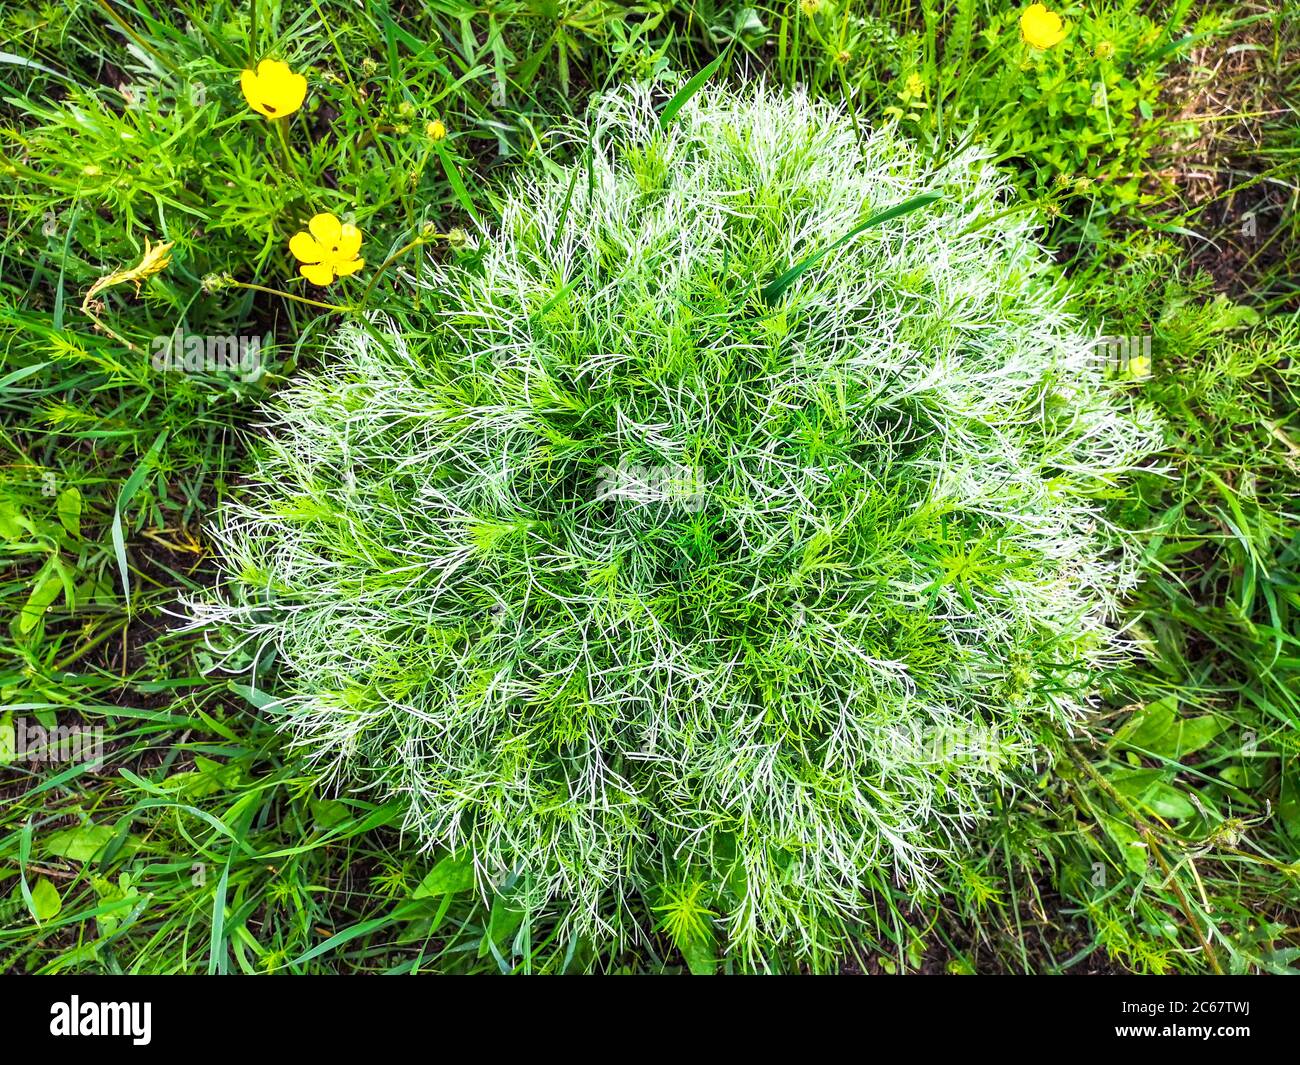 La primavera rotonda adonis vernalis cespuglio con foglie verdi e bianche sottili che fioriscono con fiori gialli che crescono su un prato in natura selvaggia su una collina. Foto Stock